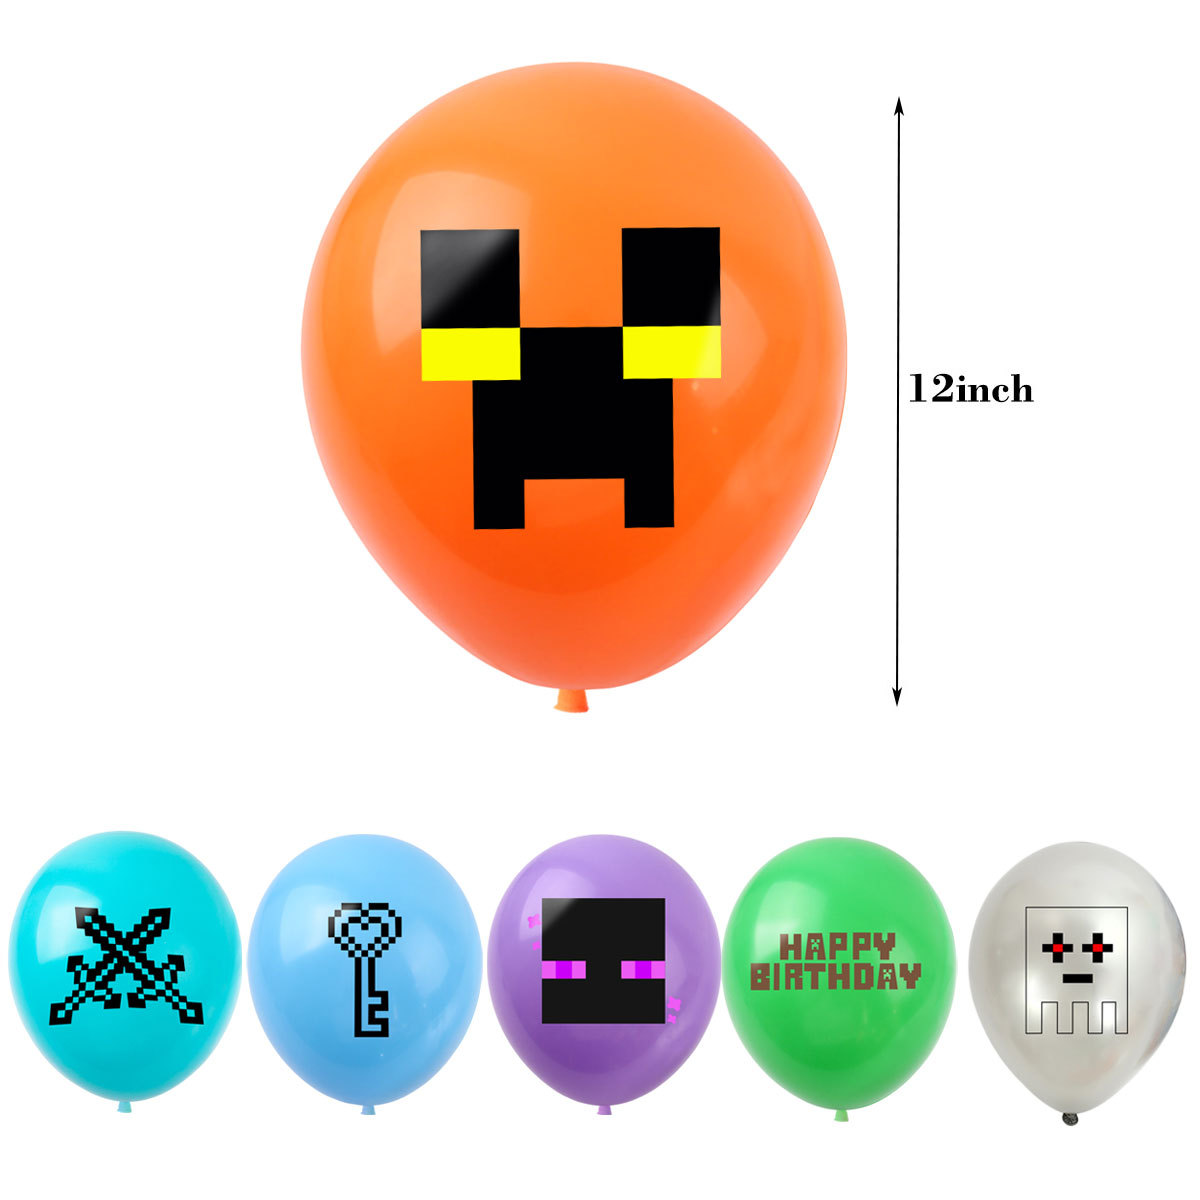 像素大战气球5